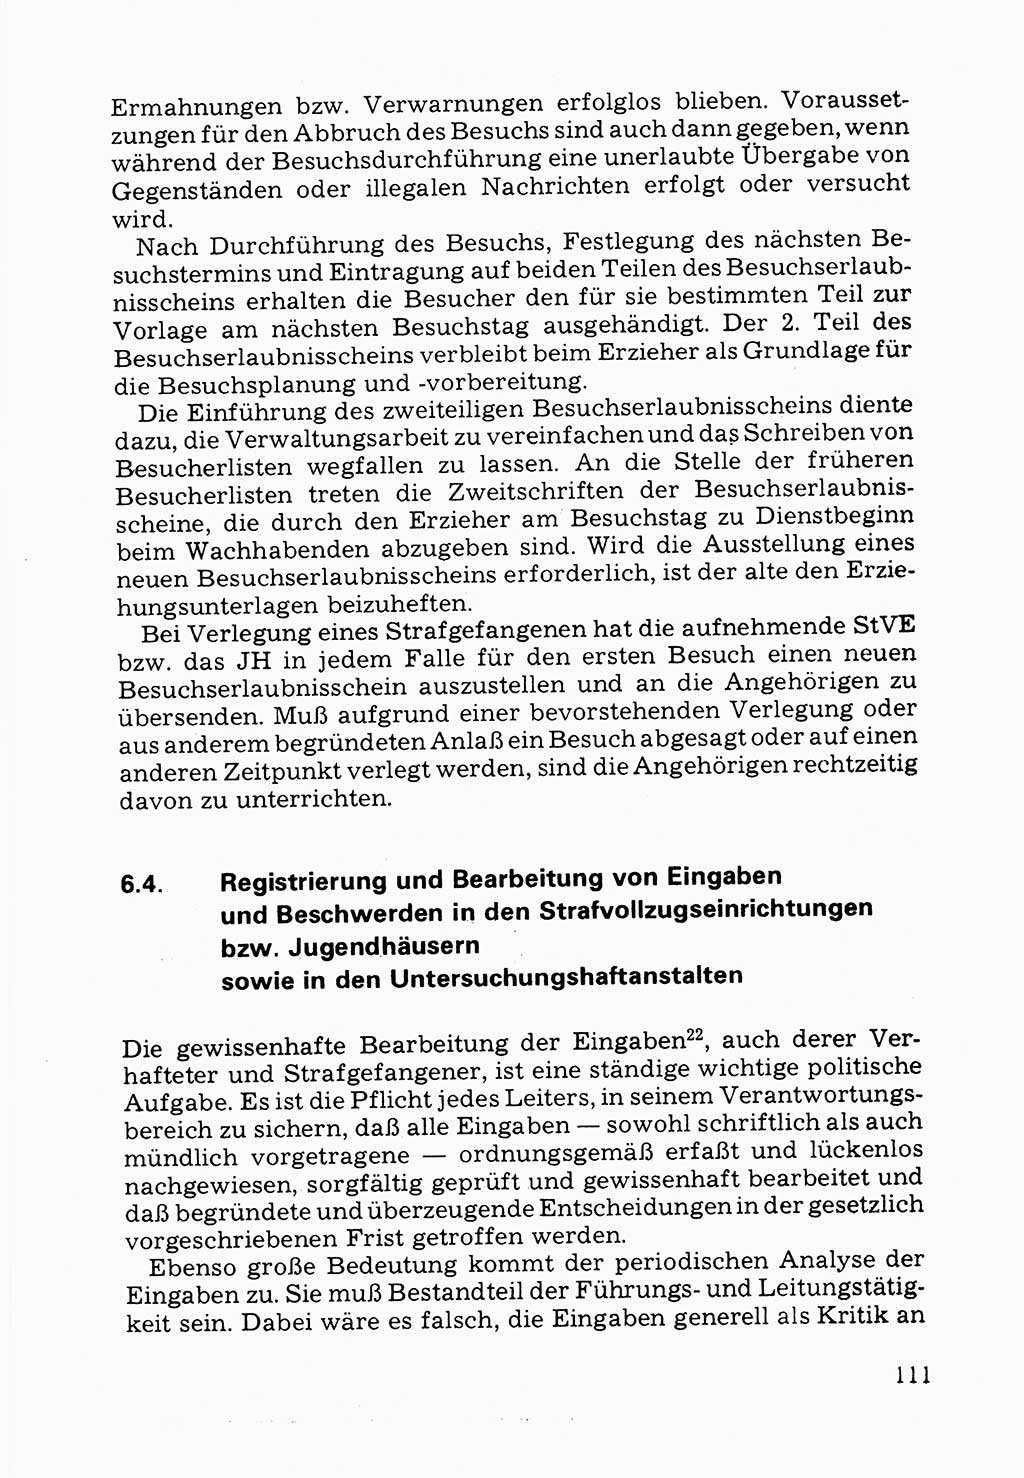 Verwaltungsmäßige Aufgaben beim Vollzug der Untersuchungshaft (U-Haft) sowie der Strafen mit Freiheitsentzug (SV) [Deutsche Demokratische Republik (DDR)] 1980, Seite 111 (Aufg. Vollz. U-Haft SV DDR 1980, S. 111)